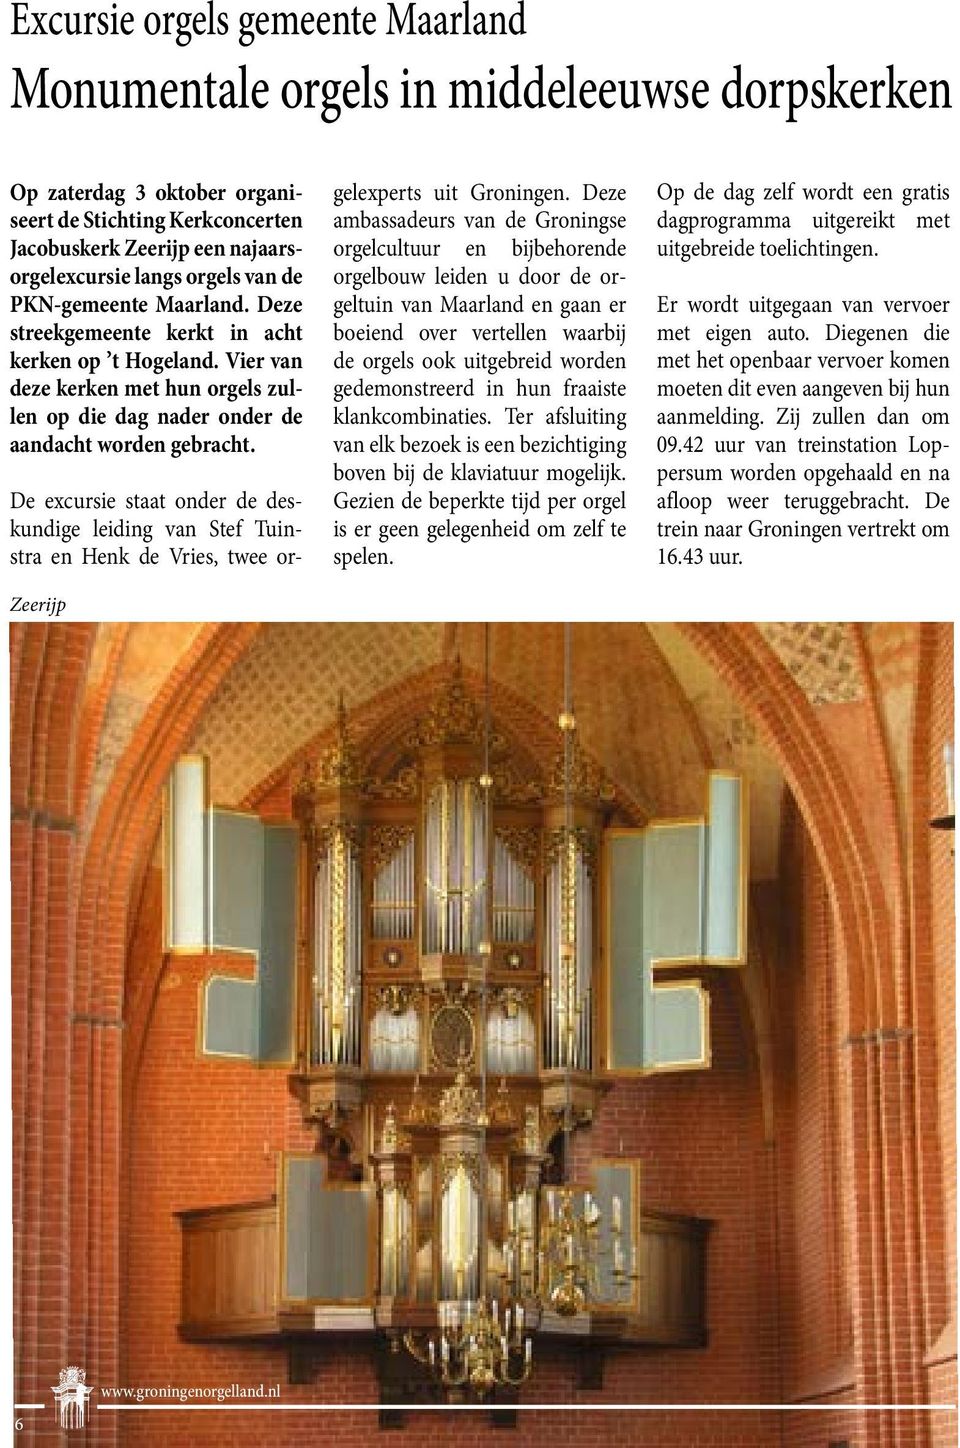 Zeerijp De excursie staat onder de deskundige leiding van Stef Tuinstra en Henk de Vries, twee orgelexperts uit Groningen.